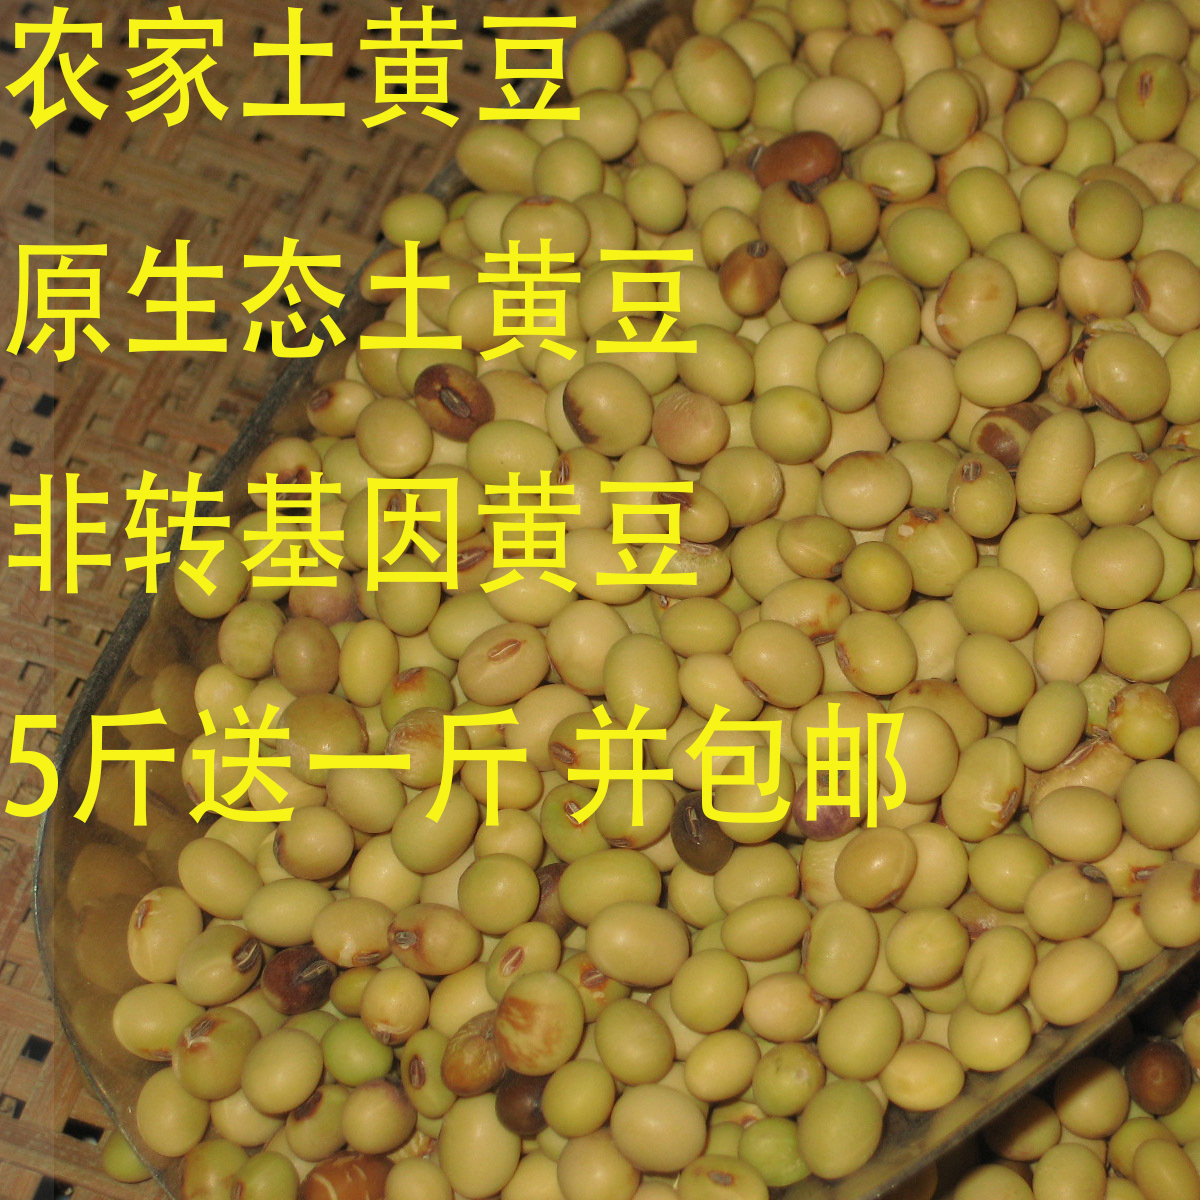 有机农家土黄豆小黄豆非转基因黄豆1斤真空包装3斤包邮5斤送1斤